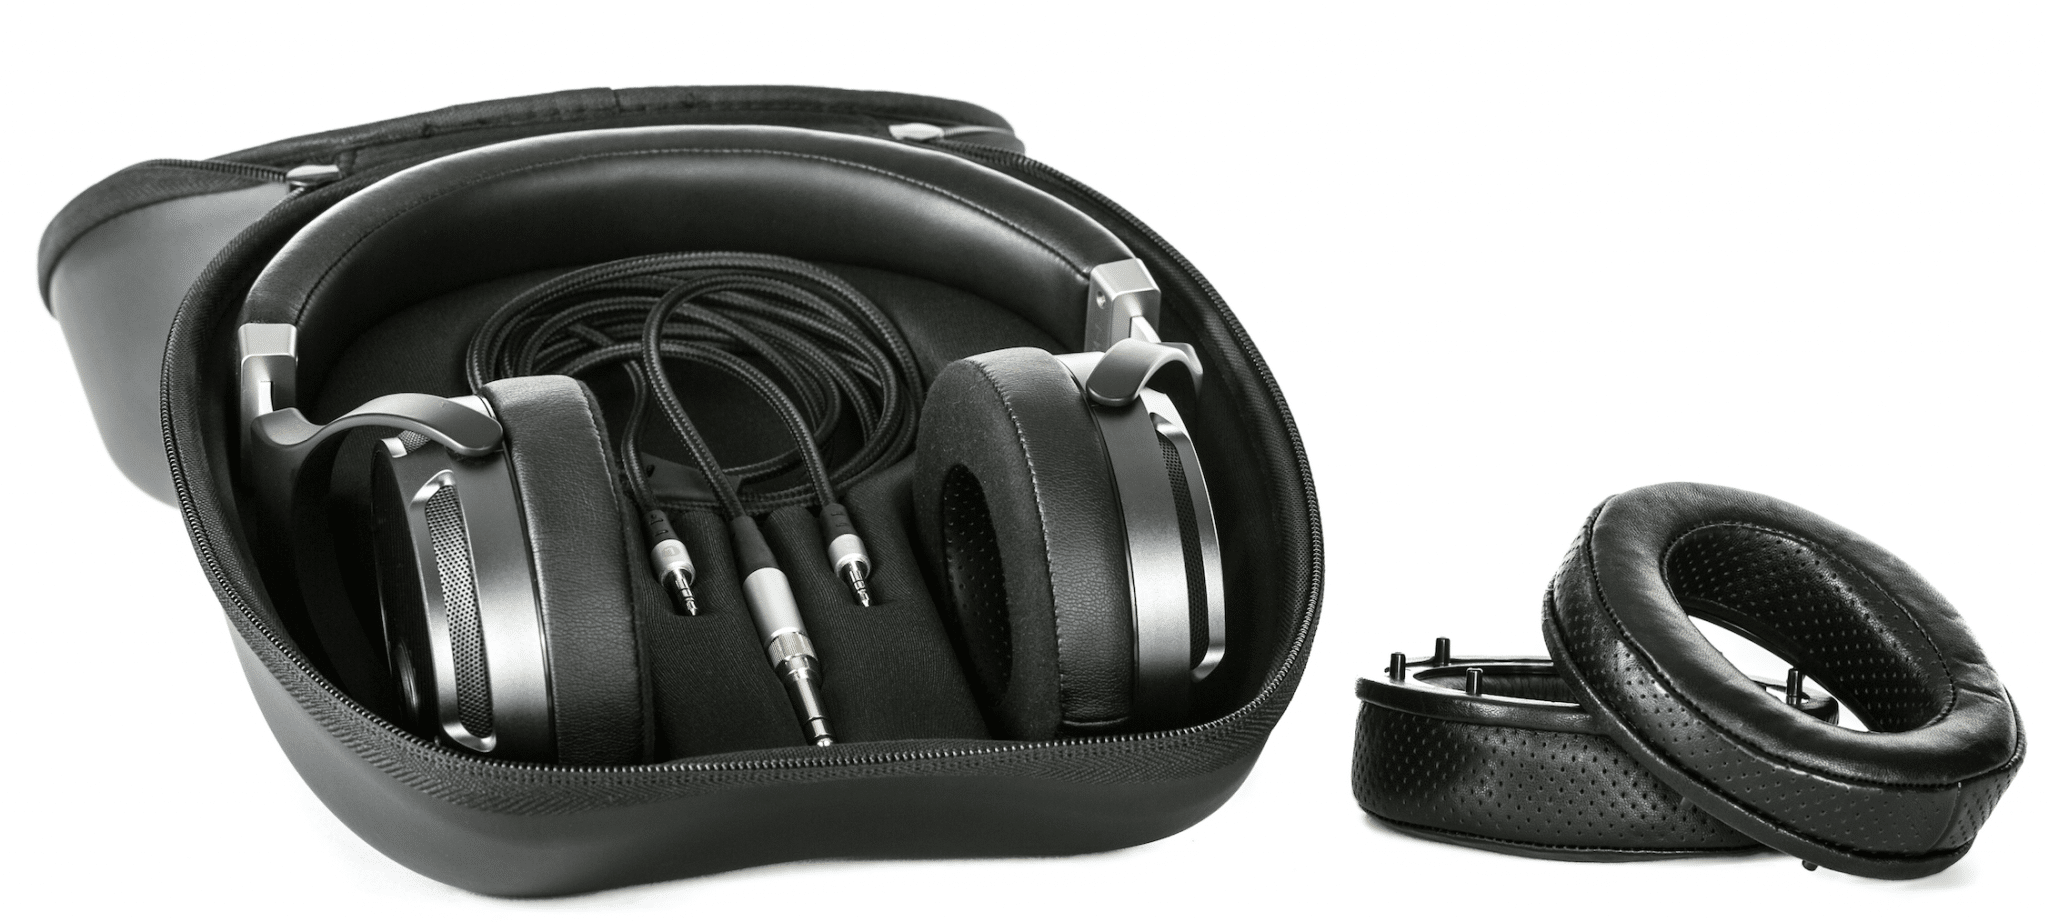 ERA-1 headphones From Quad